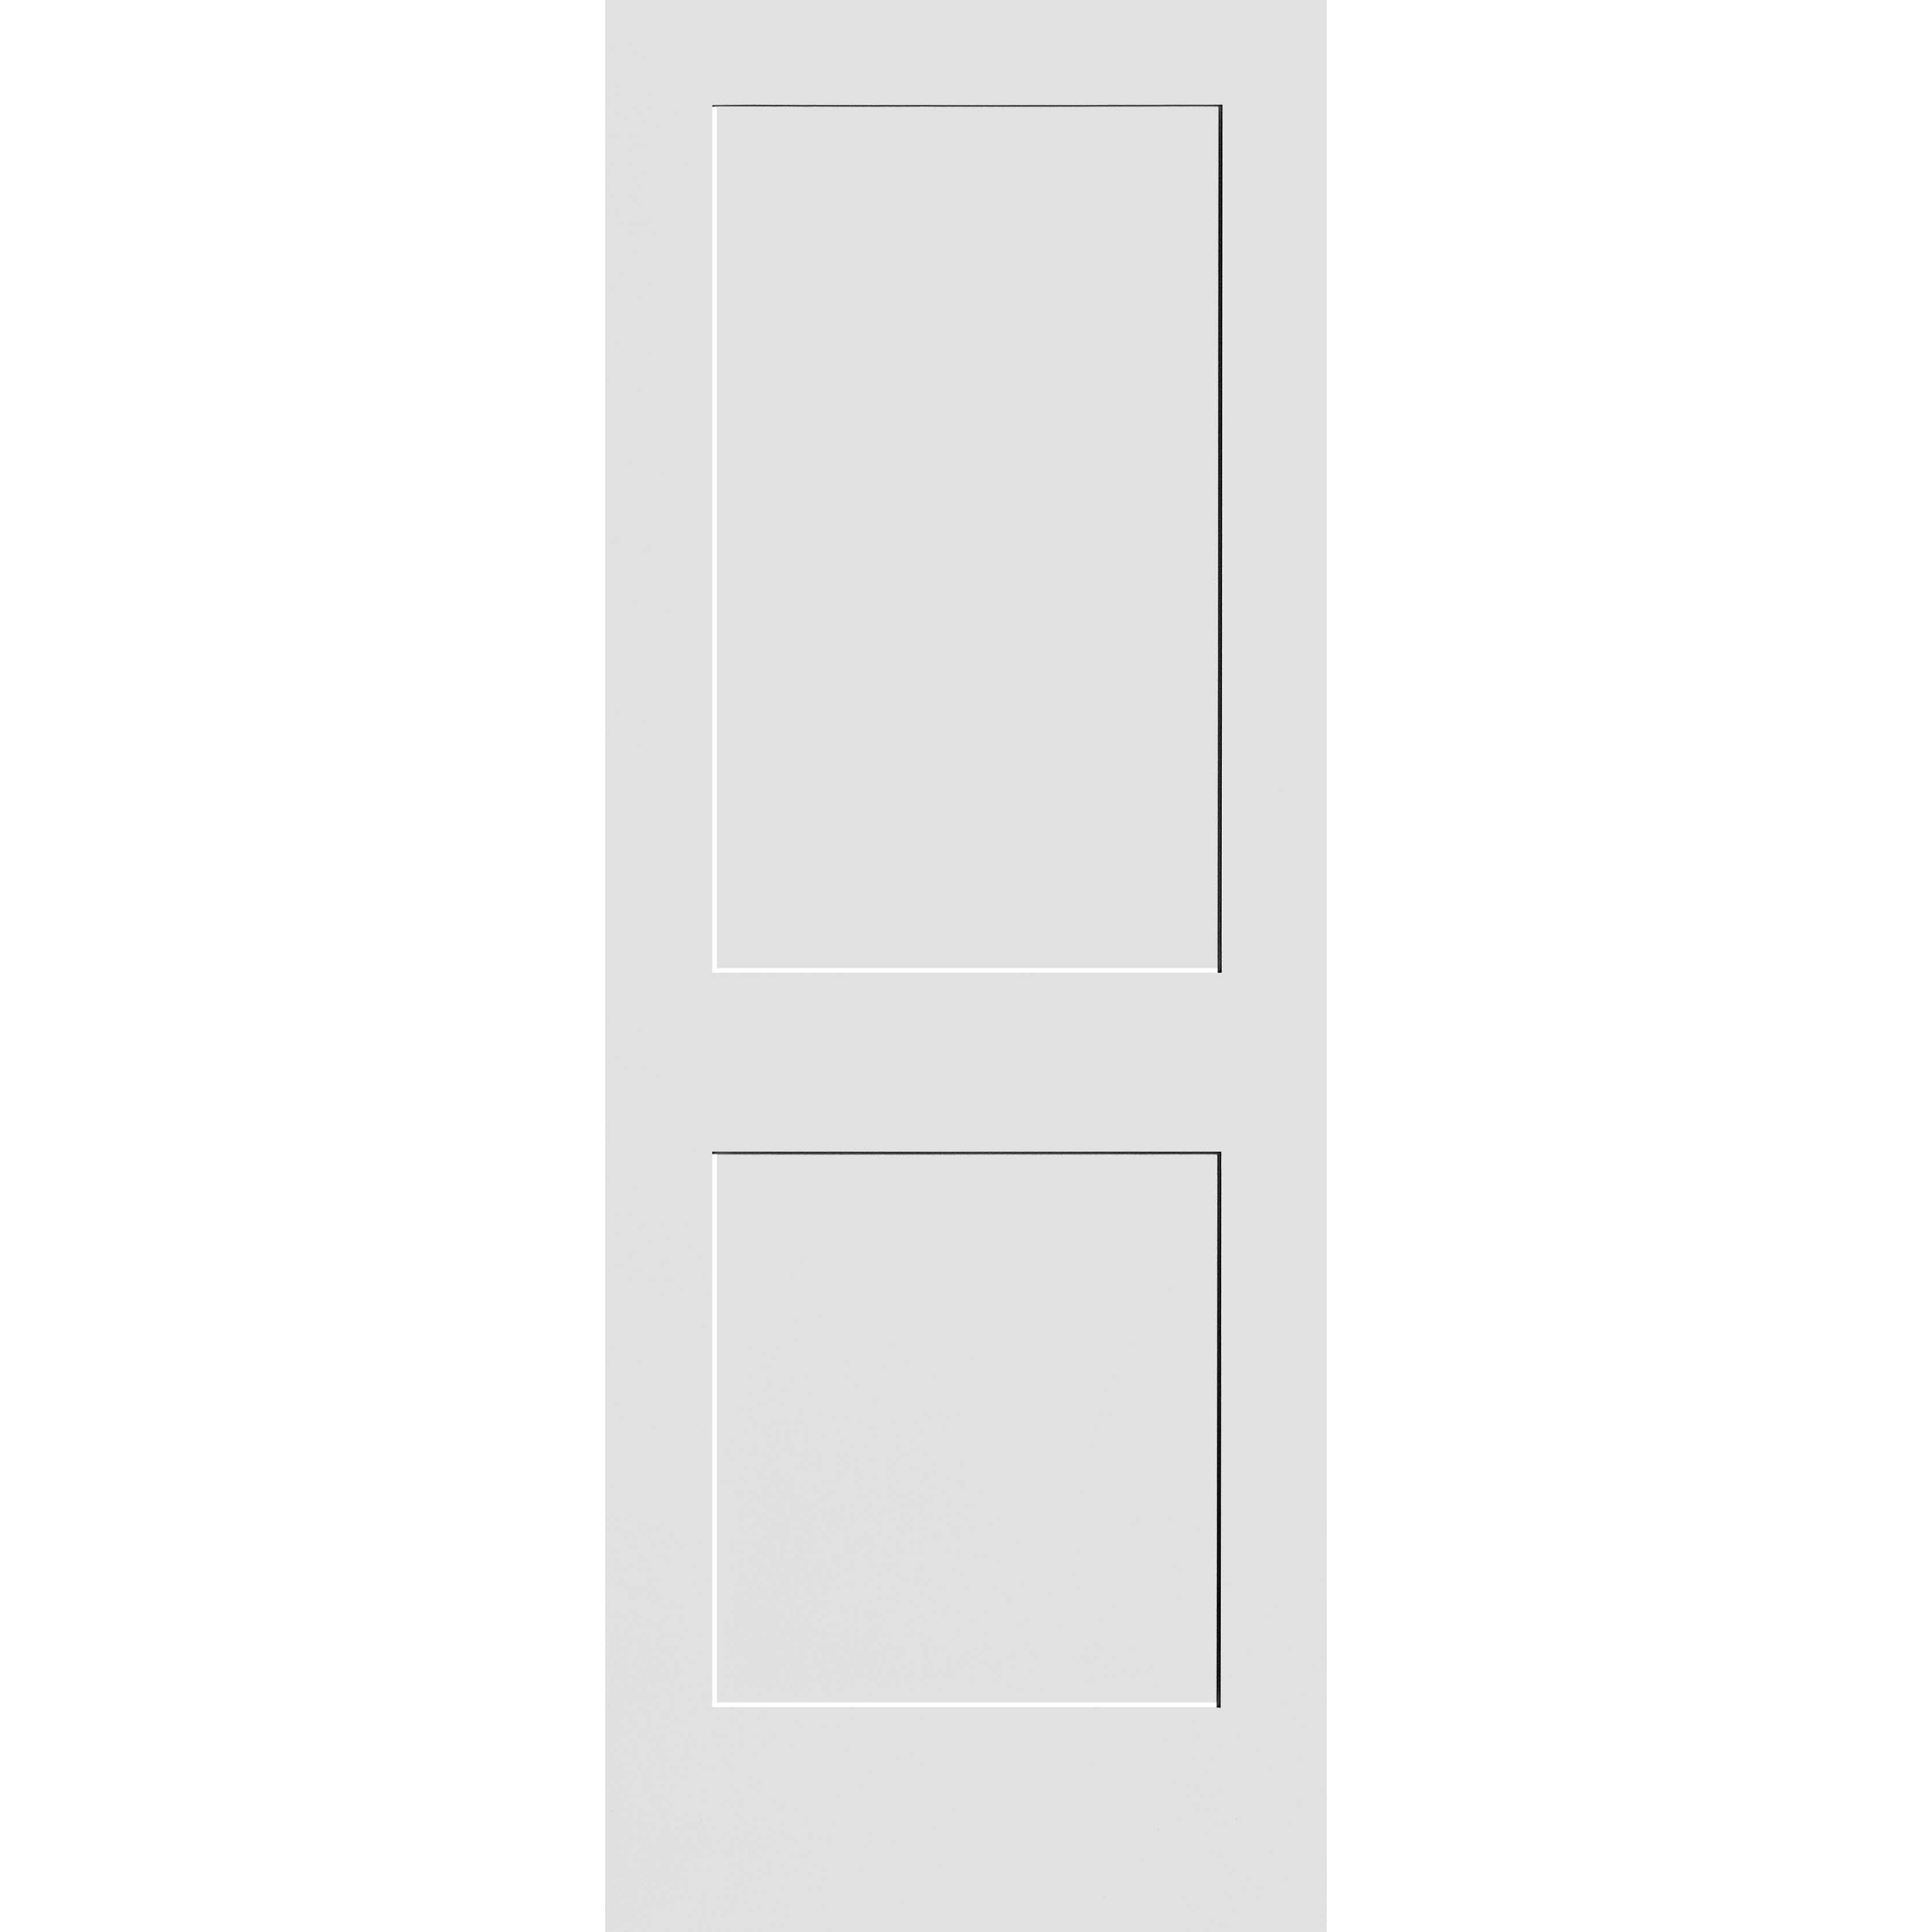 30X80 #8402 MDF PRIMED SHAKER PANEL INTERIOR DOOR